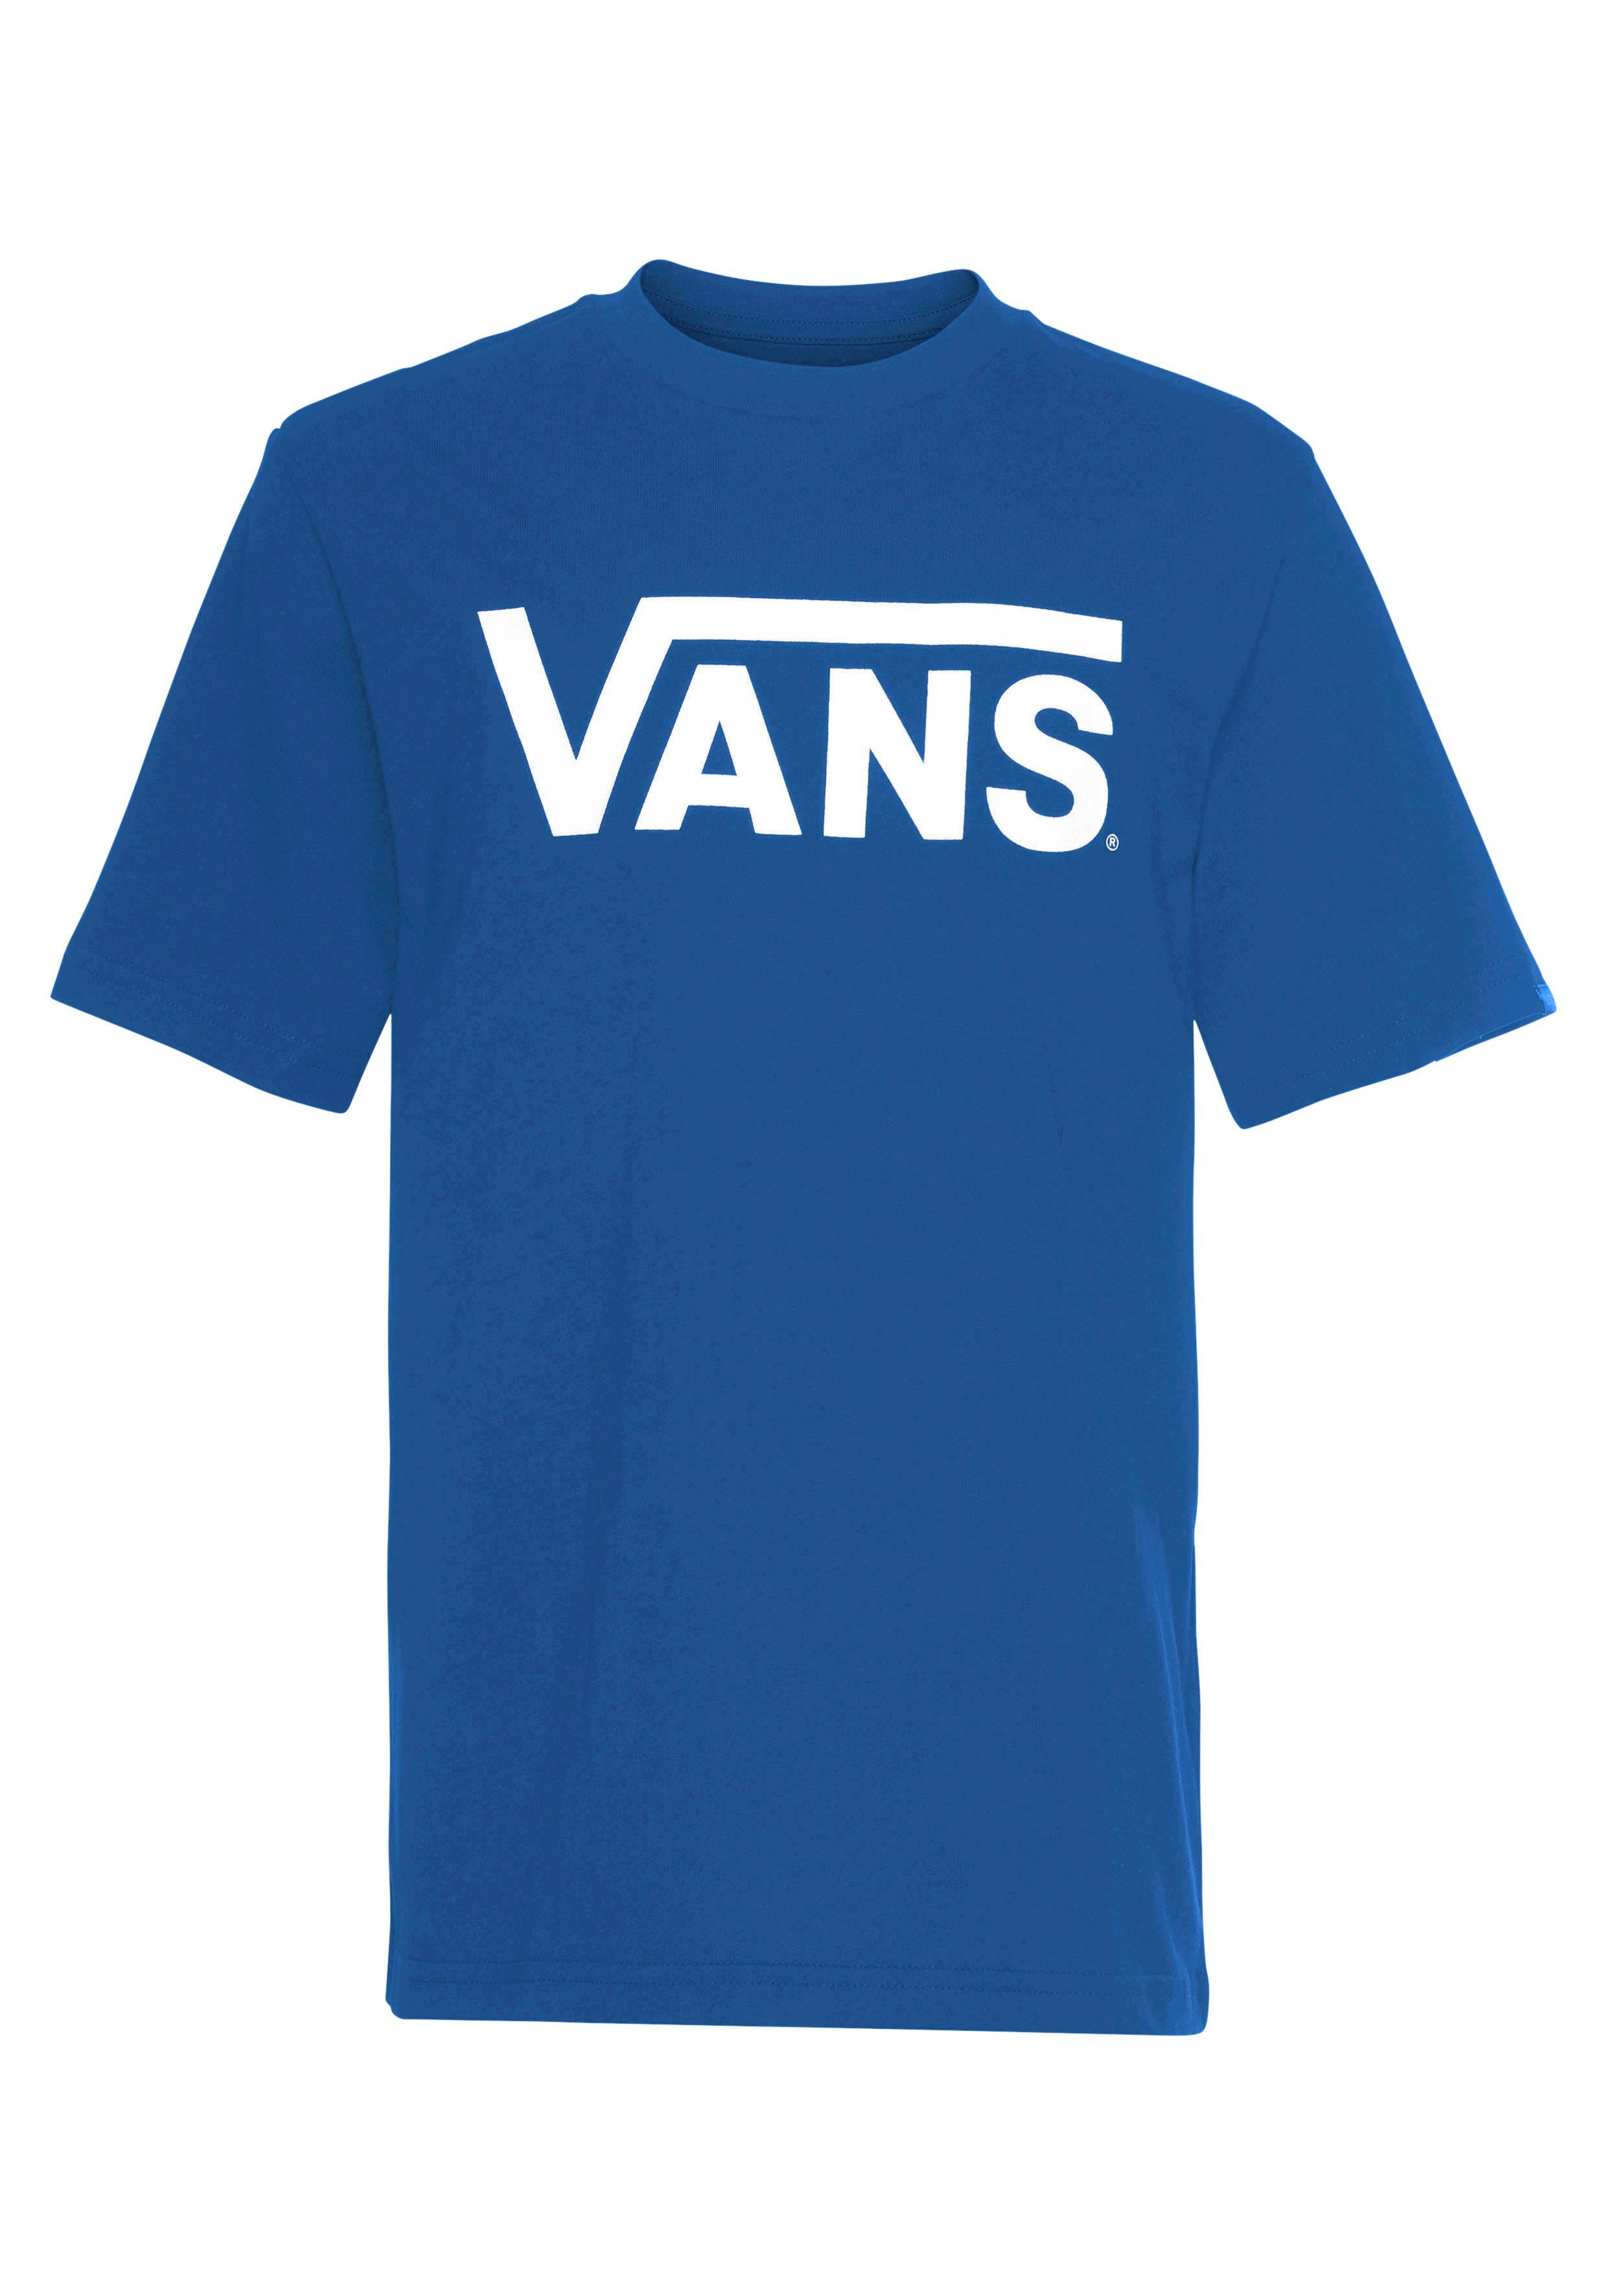 VANS T-Shirt TRUE BLUE-WHITE Vans BOYS CLASSIC